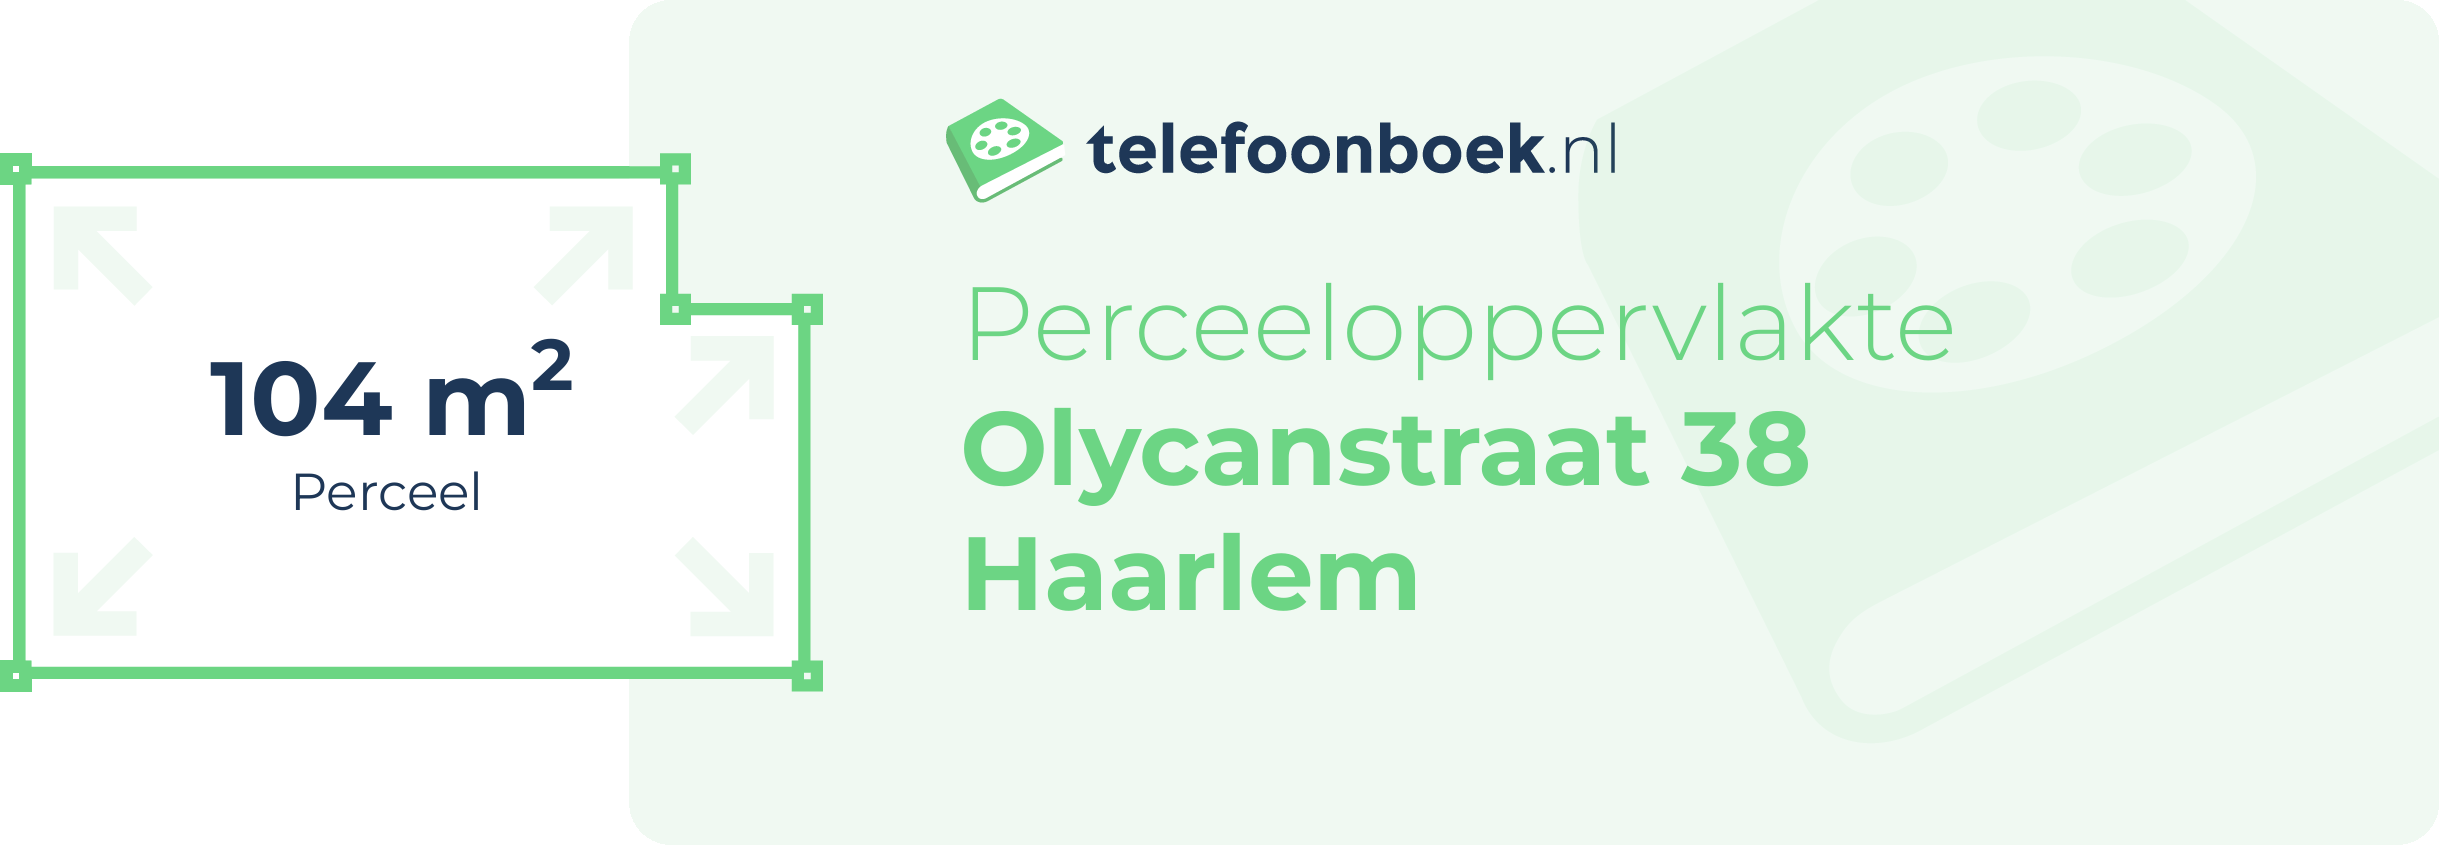 Perceeloppervlakte Olycanstraat 38 Haarlem